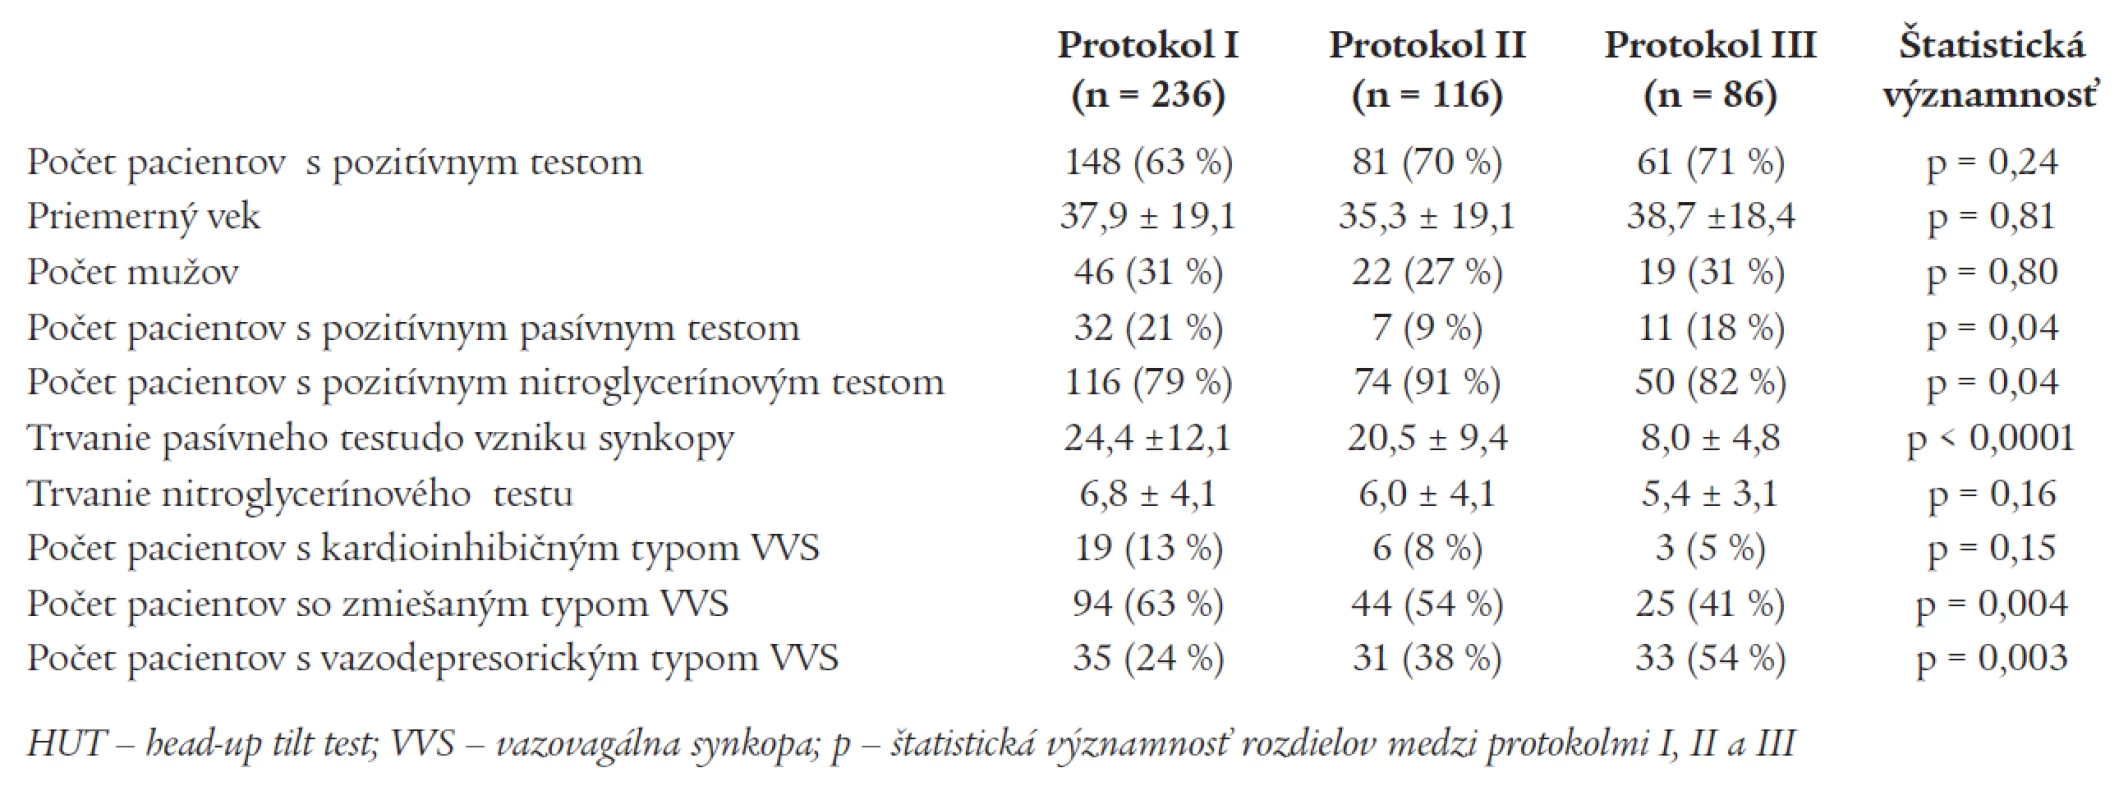 Porovnanie výsledkov jednotlivých protokolov HUT u pacientov s pozitívnym HUT.